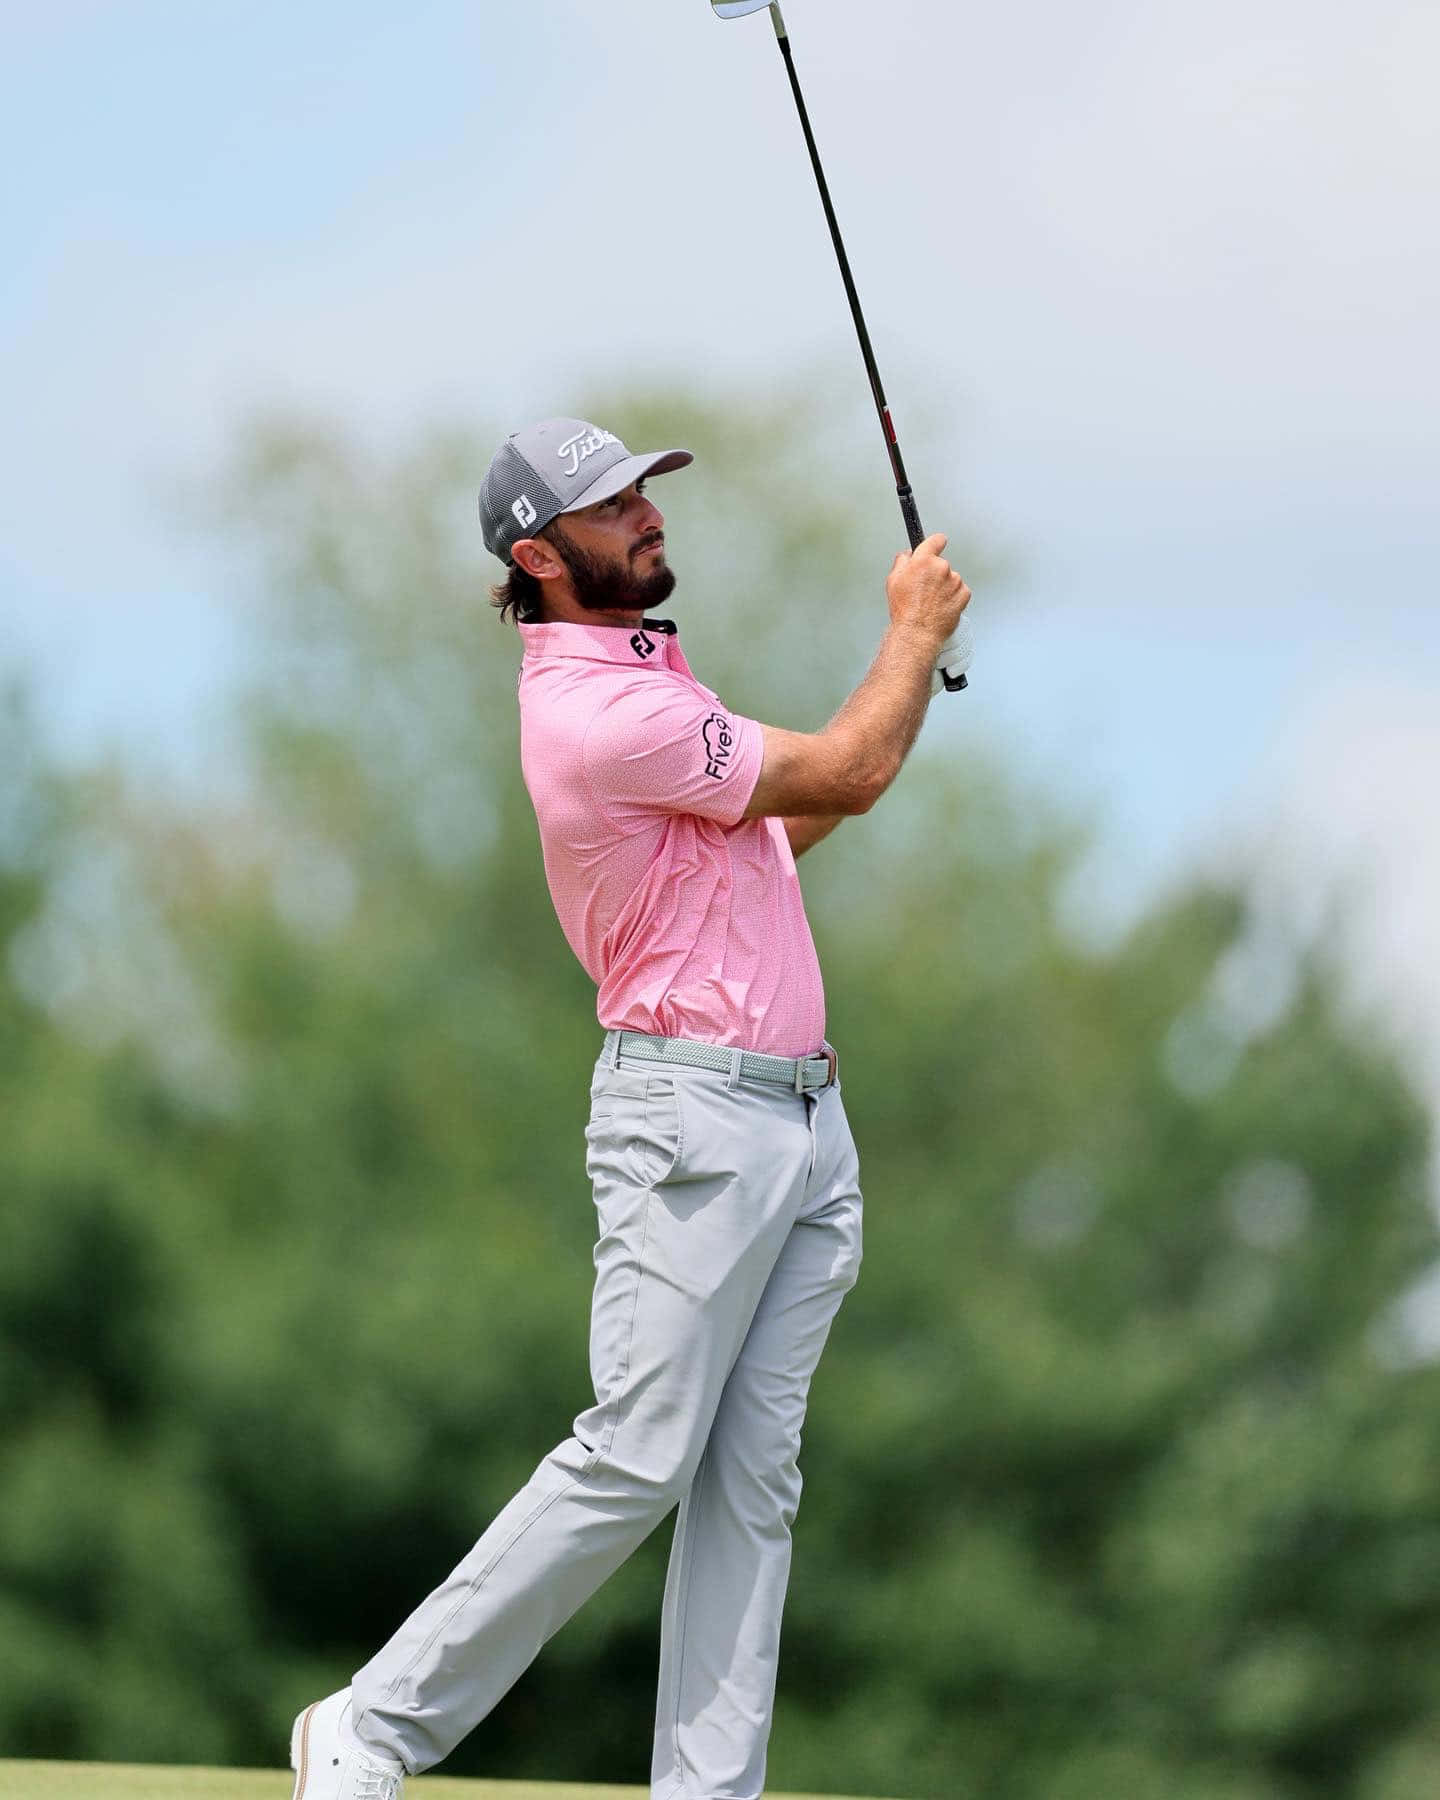 Max Homa Pink Shirt Golf Swing Wallpaper